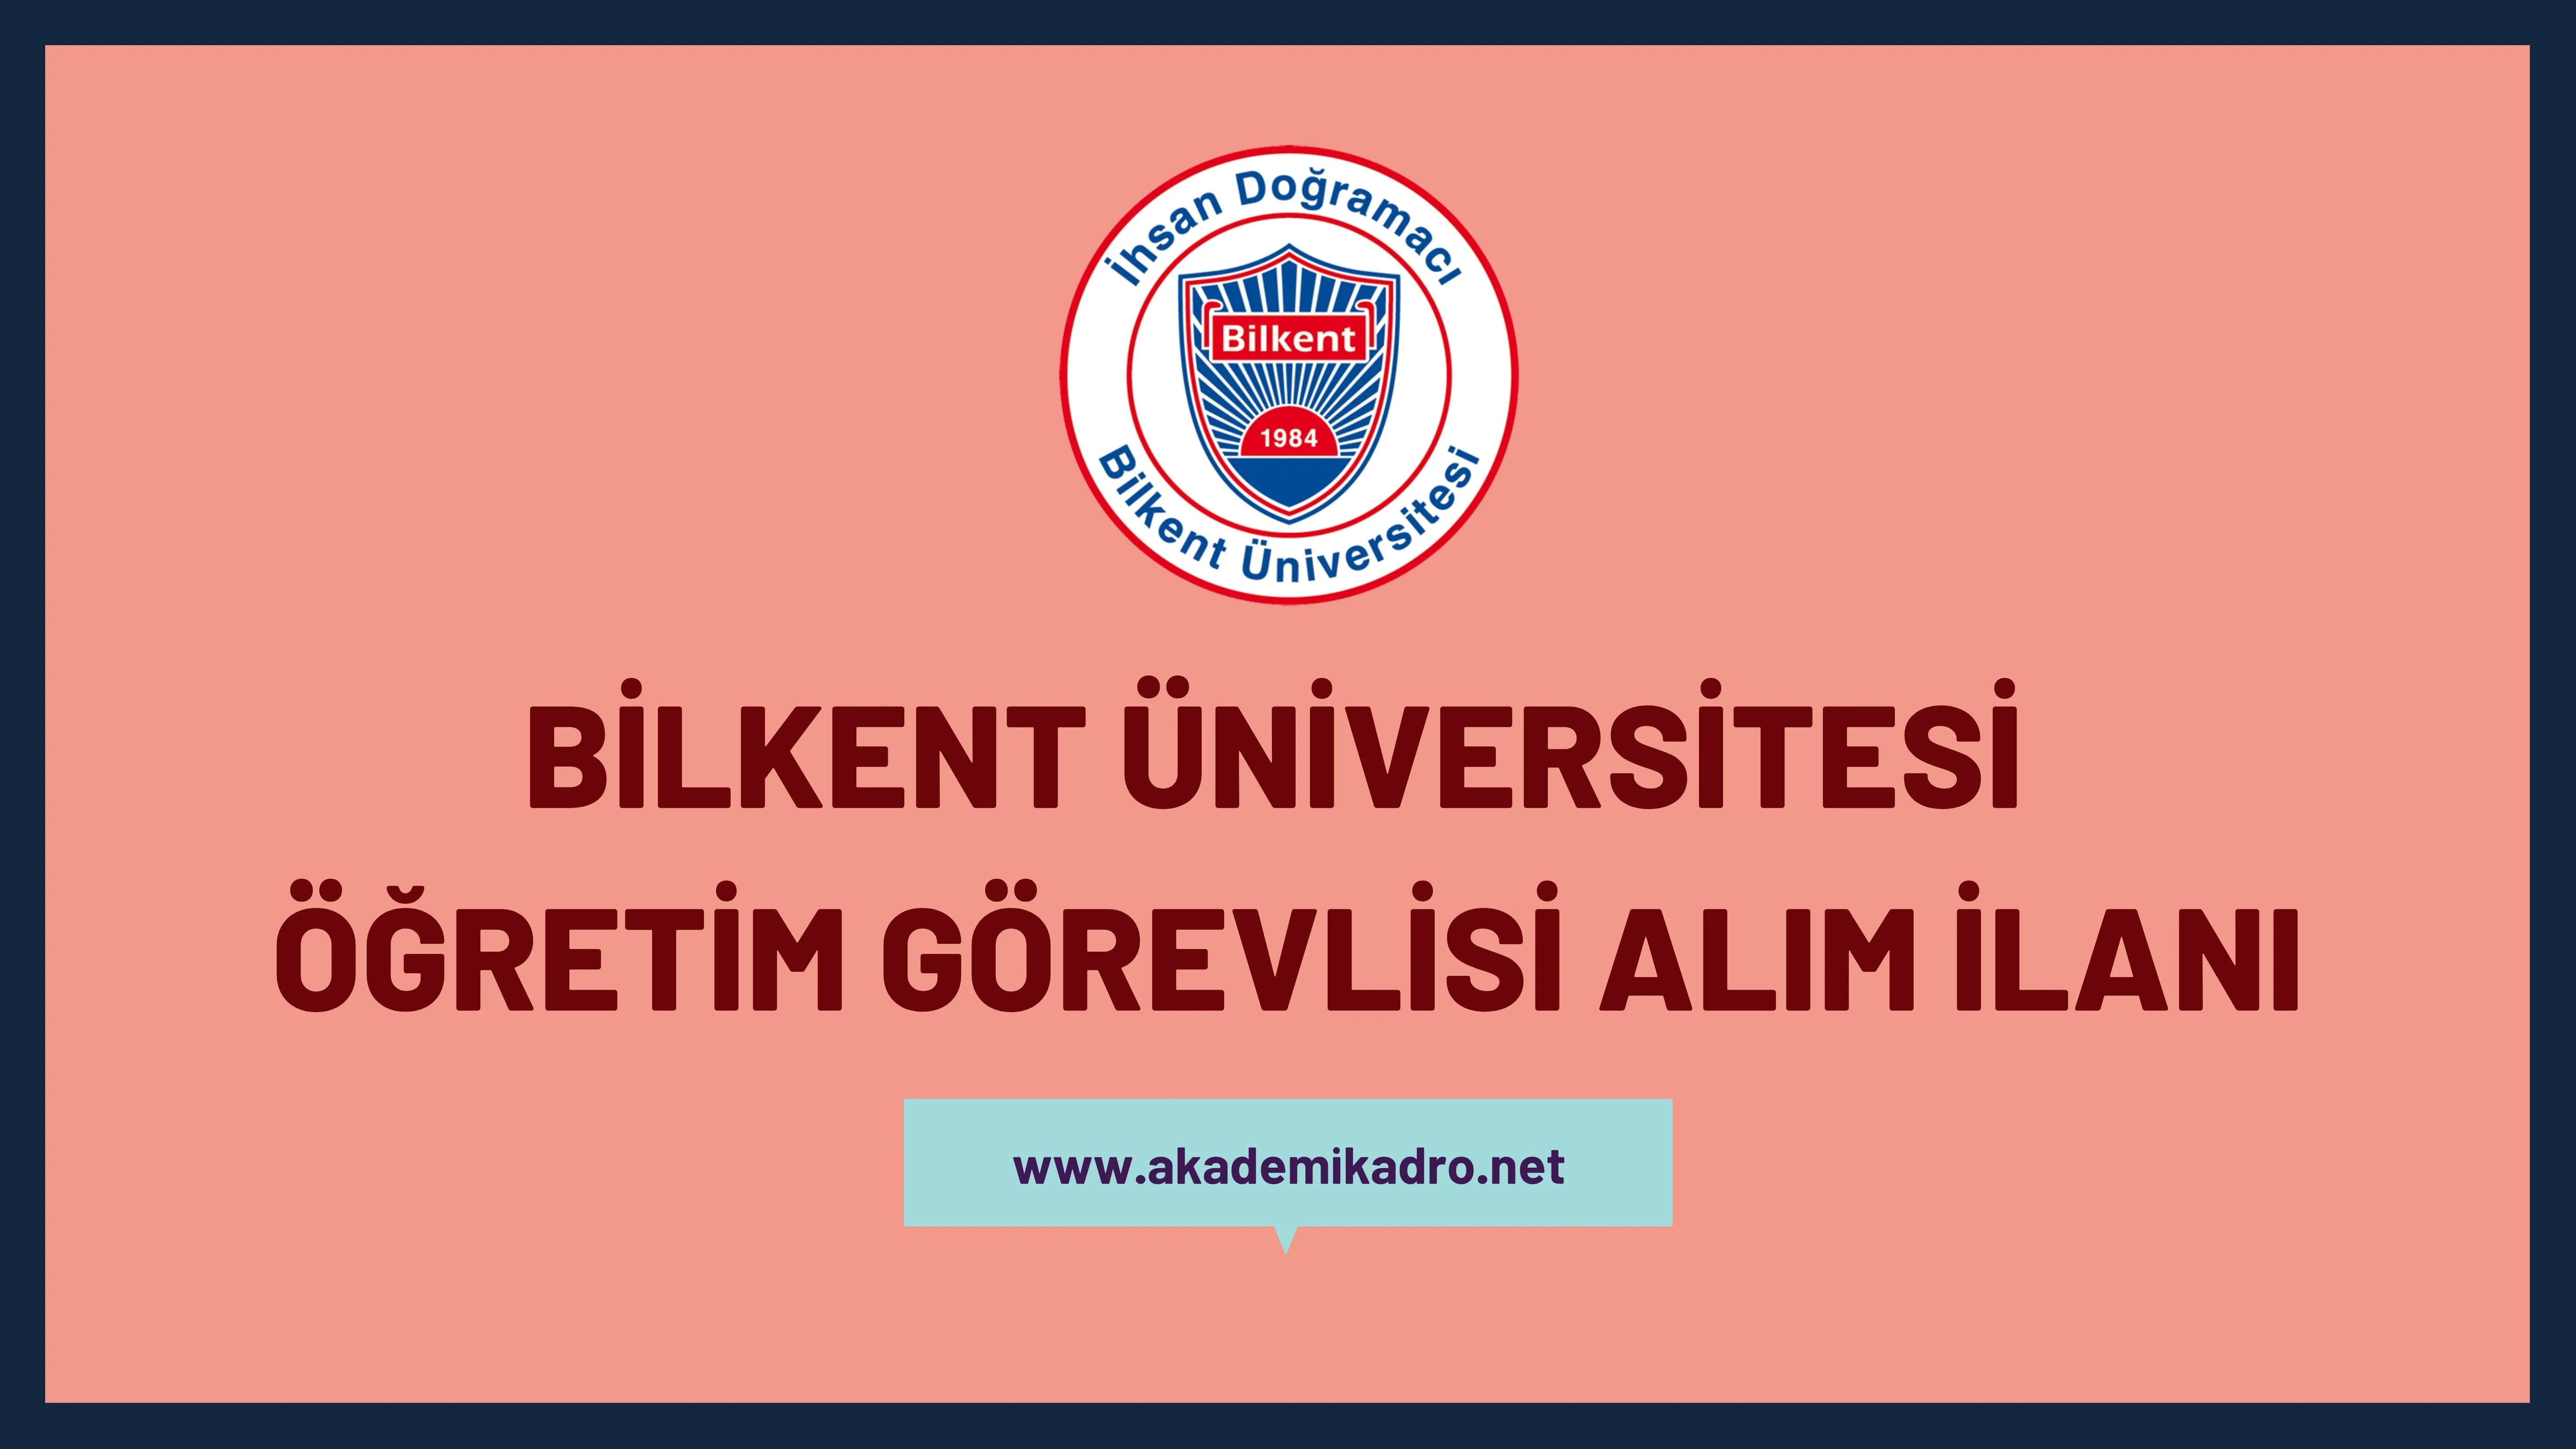 İhsan Doğramacı Bilkent Üniversitesi Öğretim görevlisi alacak. Son başvuru tarihi 30 Aralık 2022.